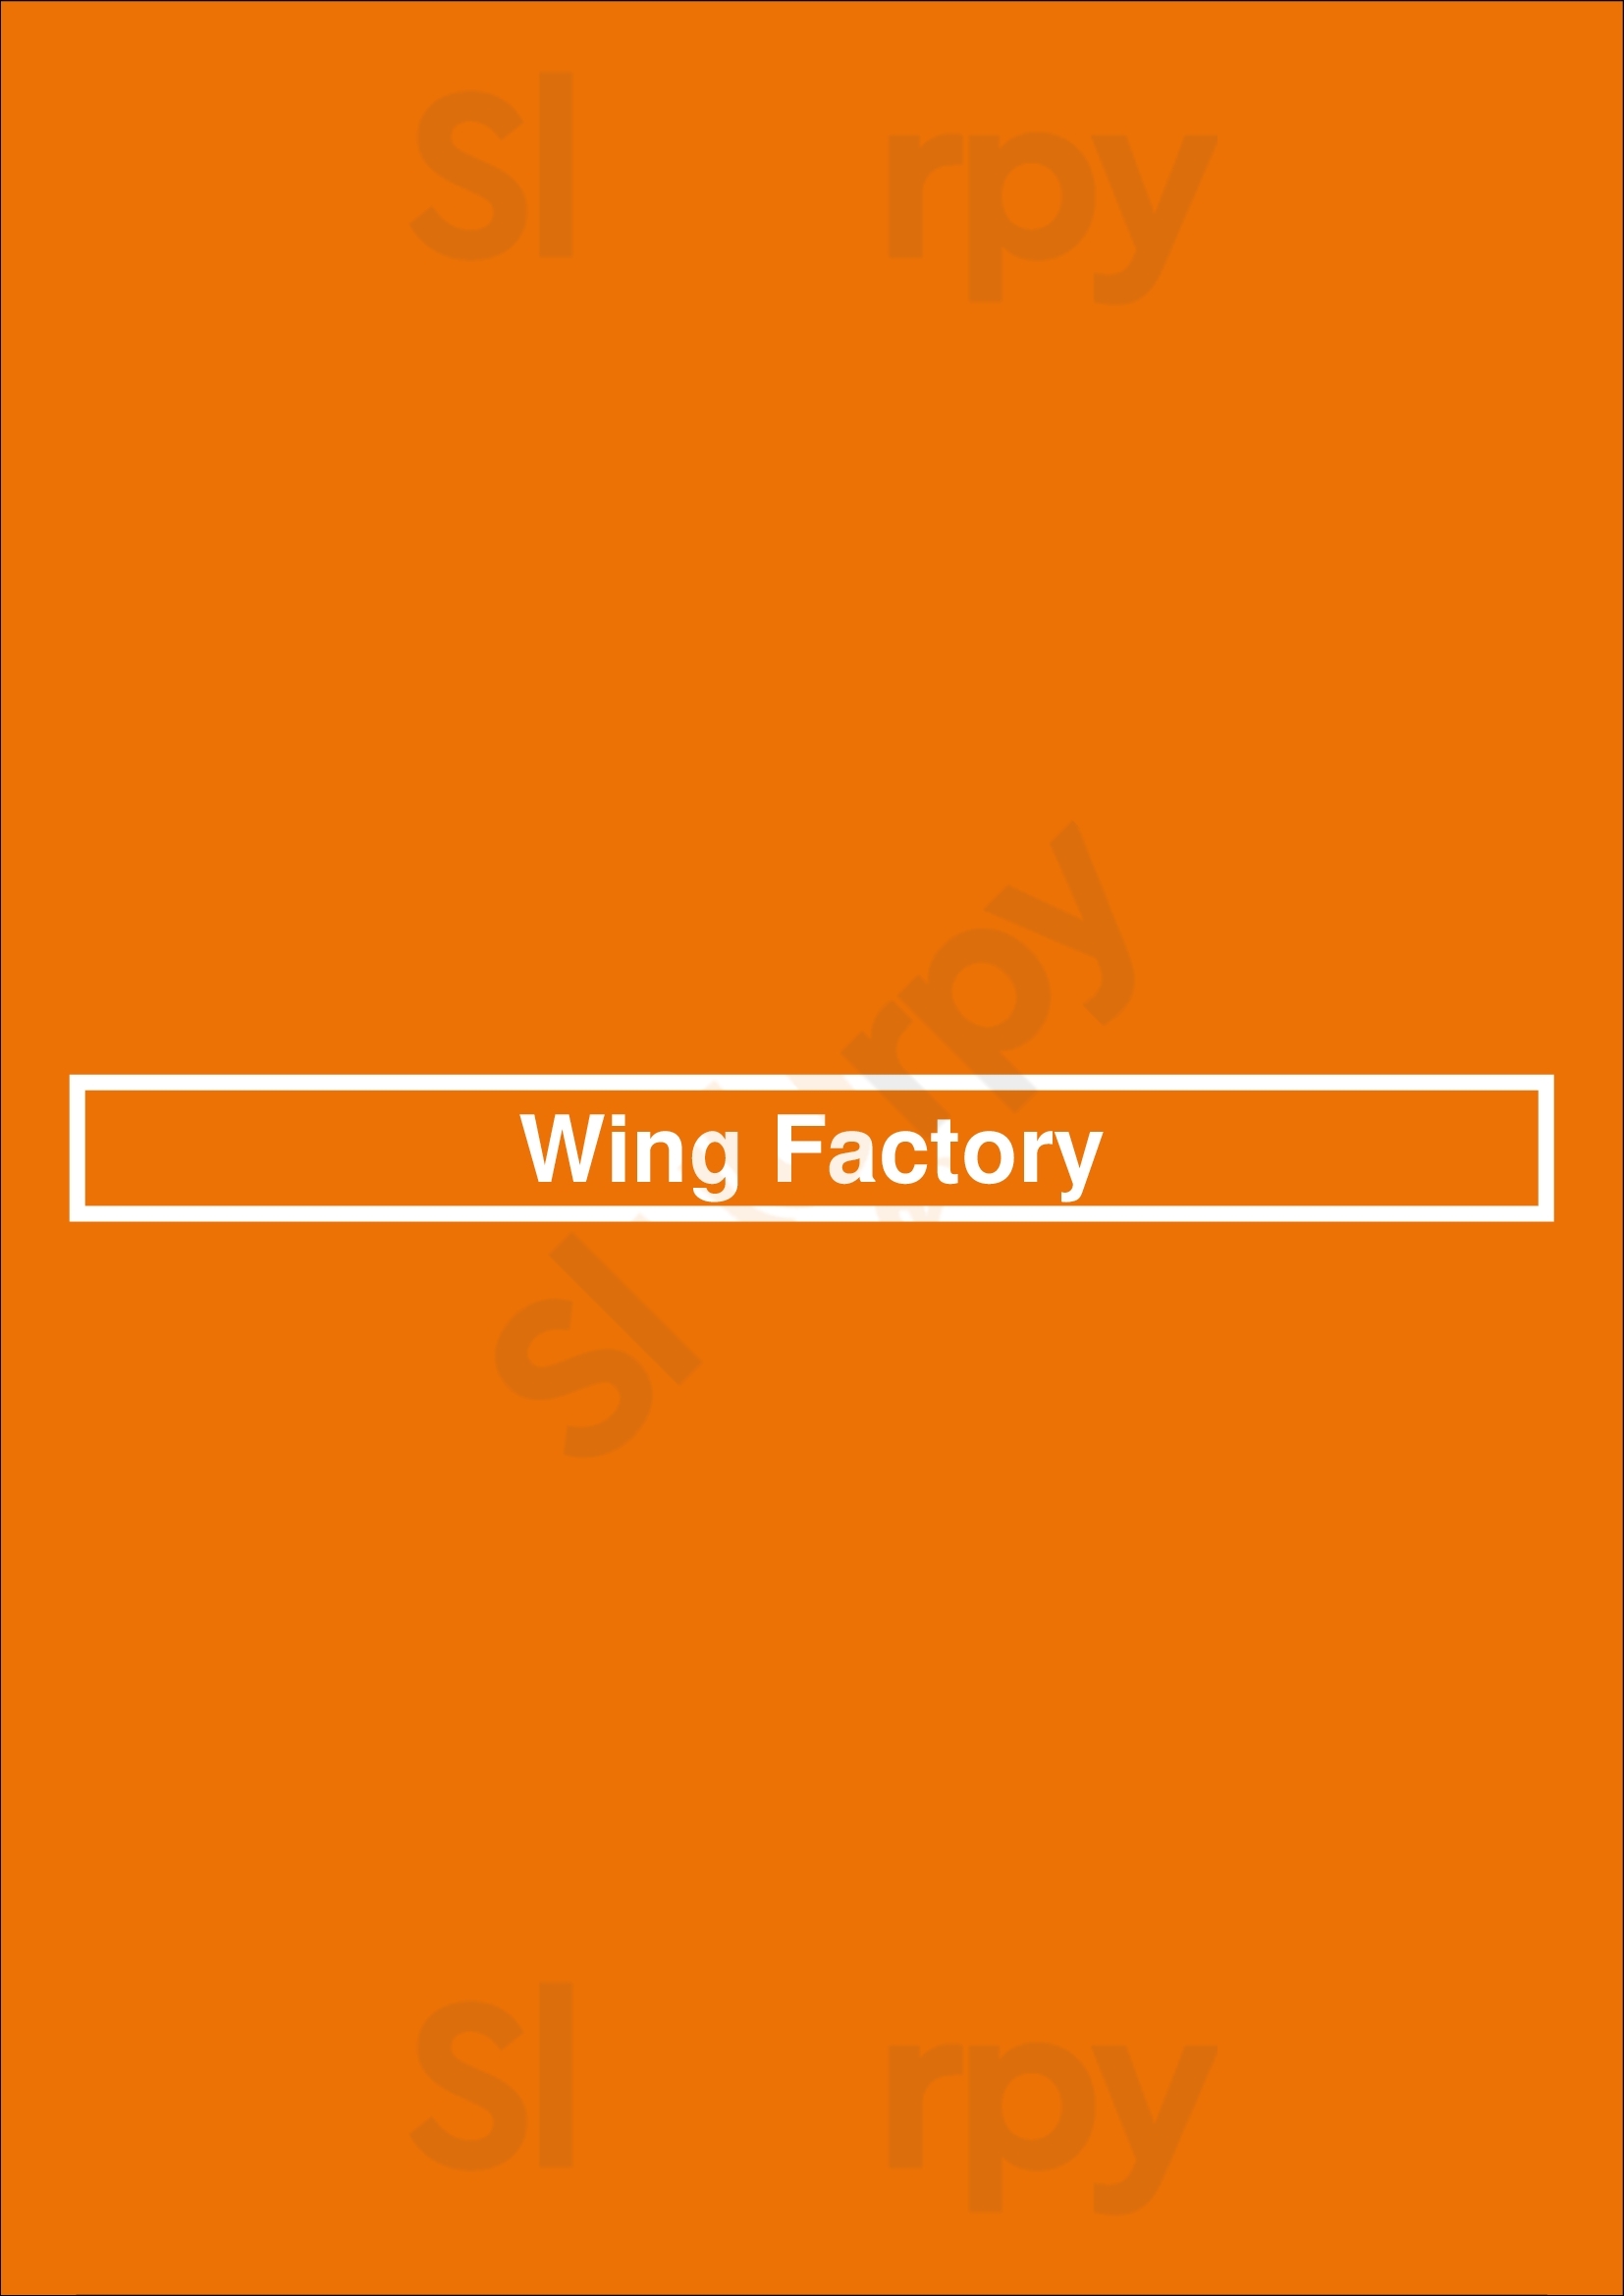 Wing Factory Atlanta Menu - 1